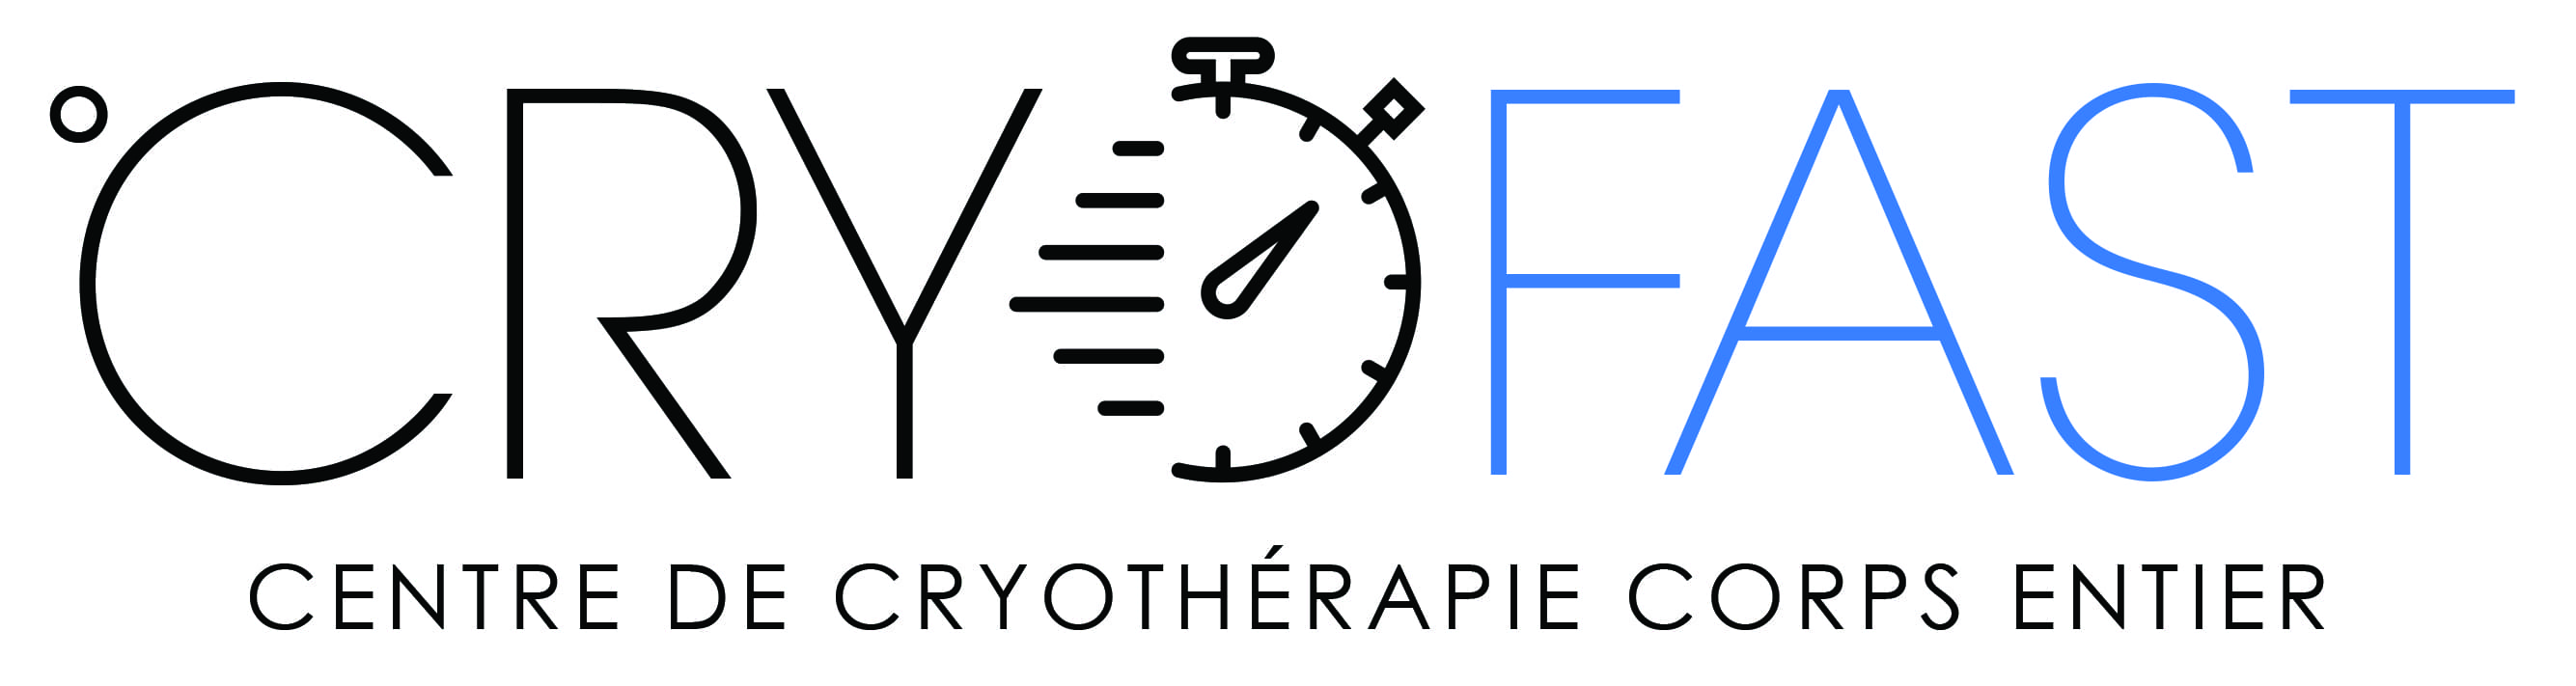 Cryofast logo